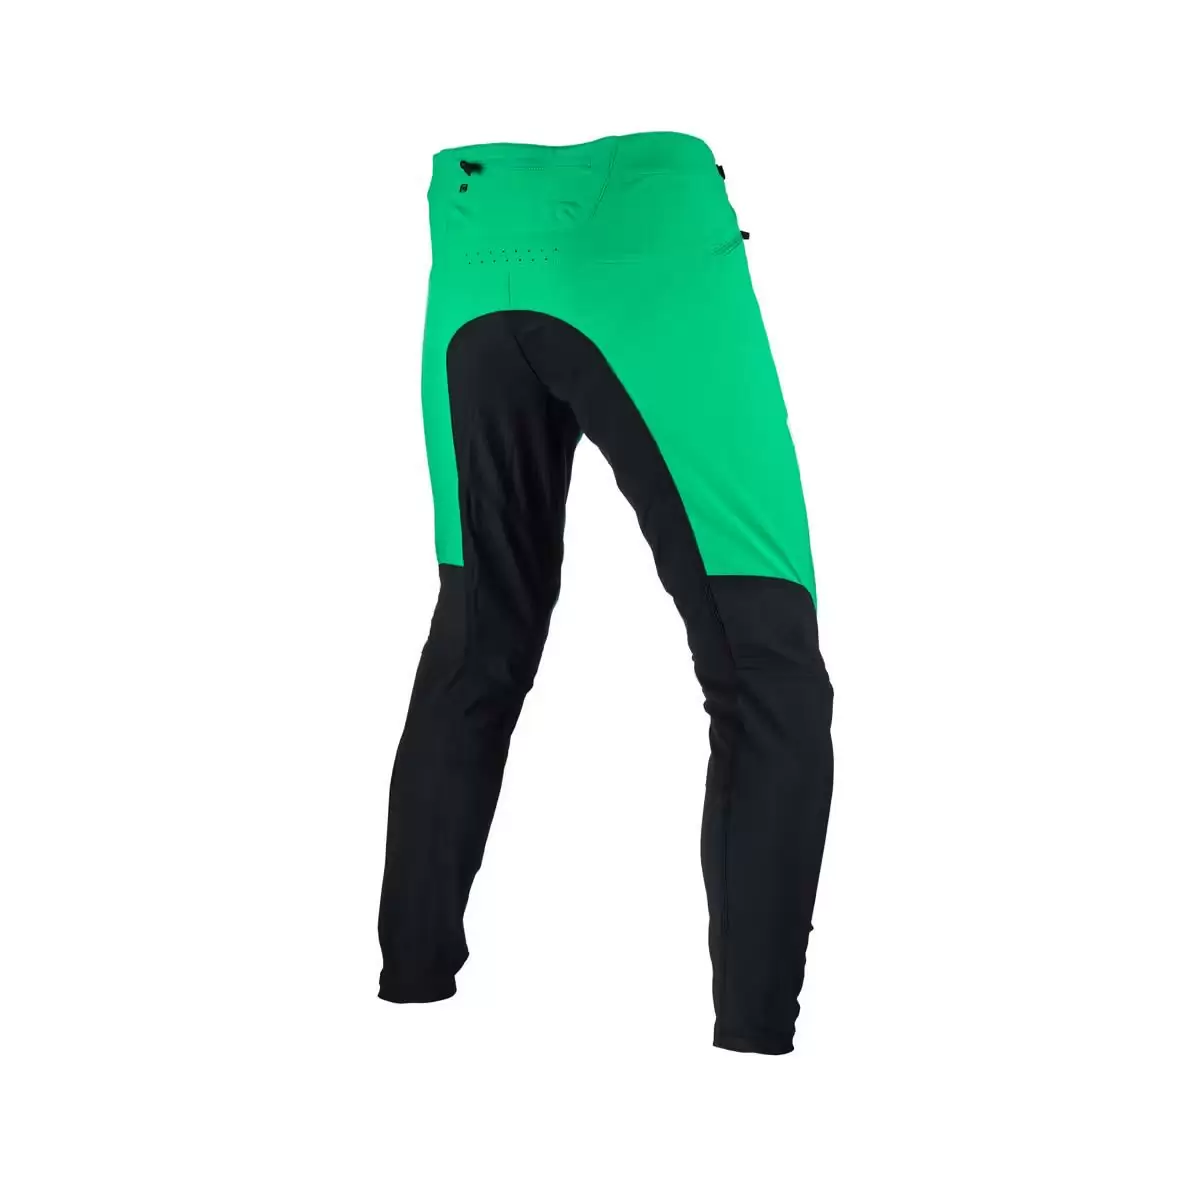 Gravity 4.0 MTB Long Pants Black/Green Size L #1